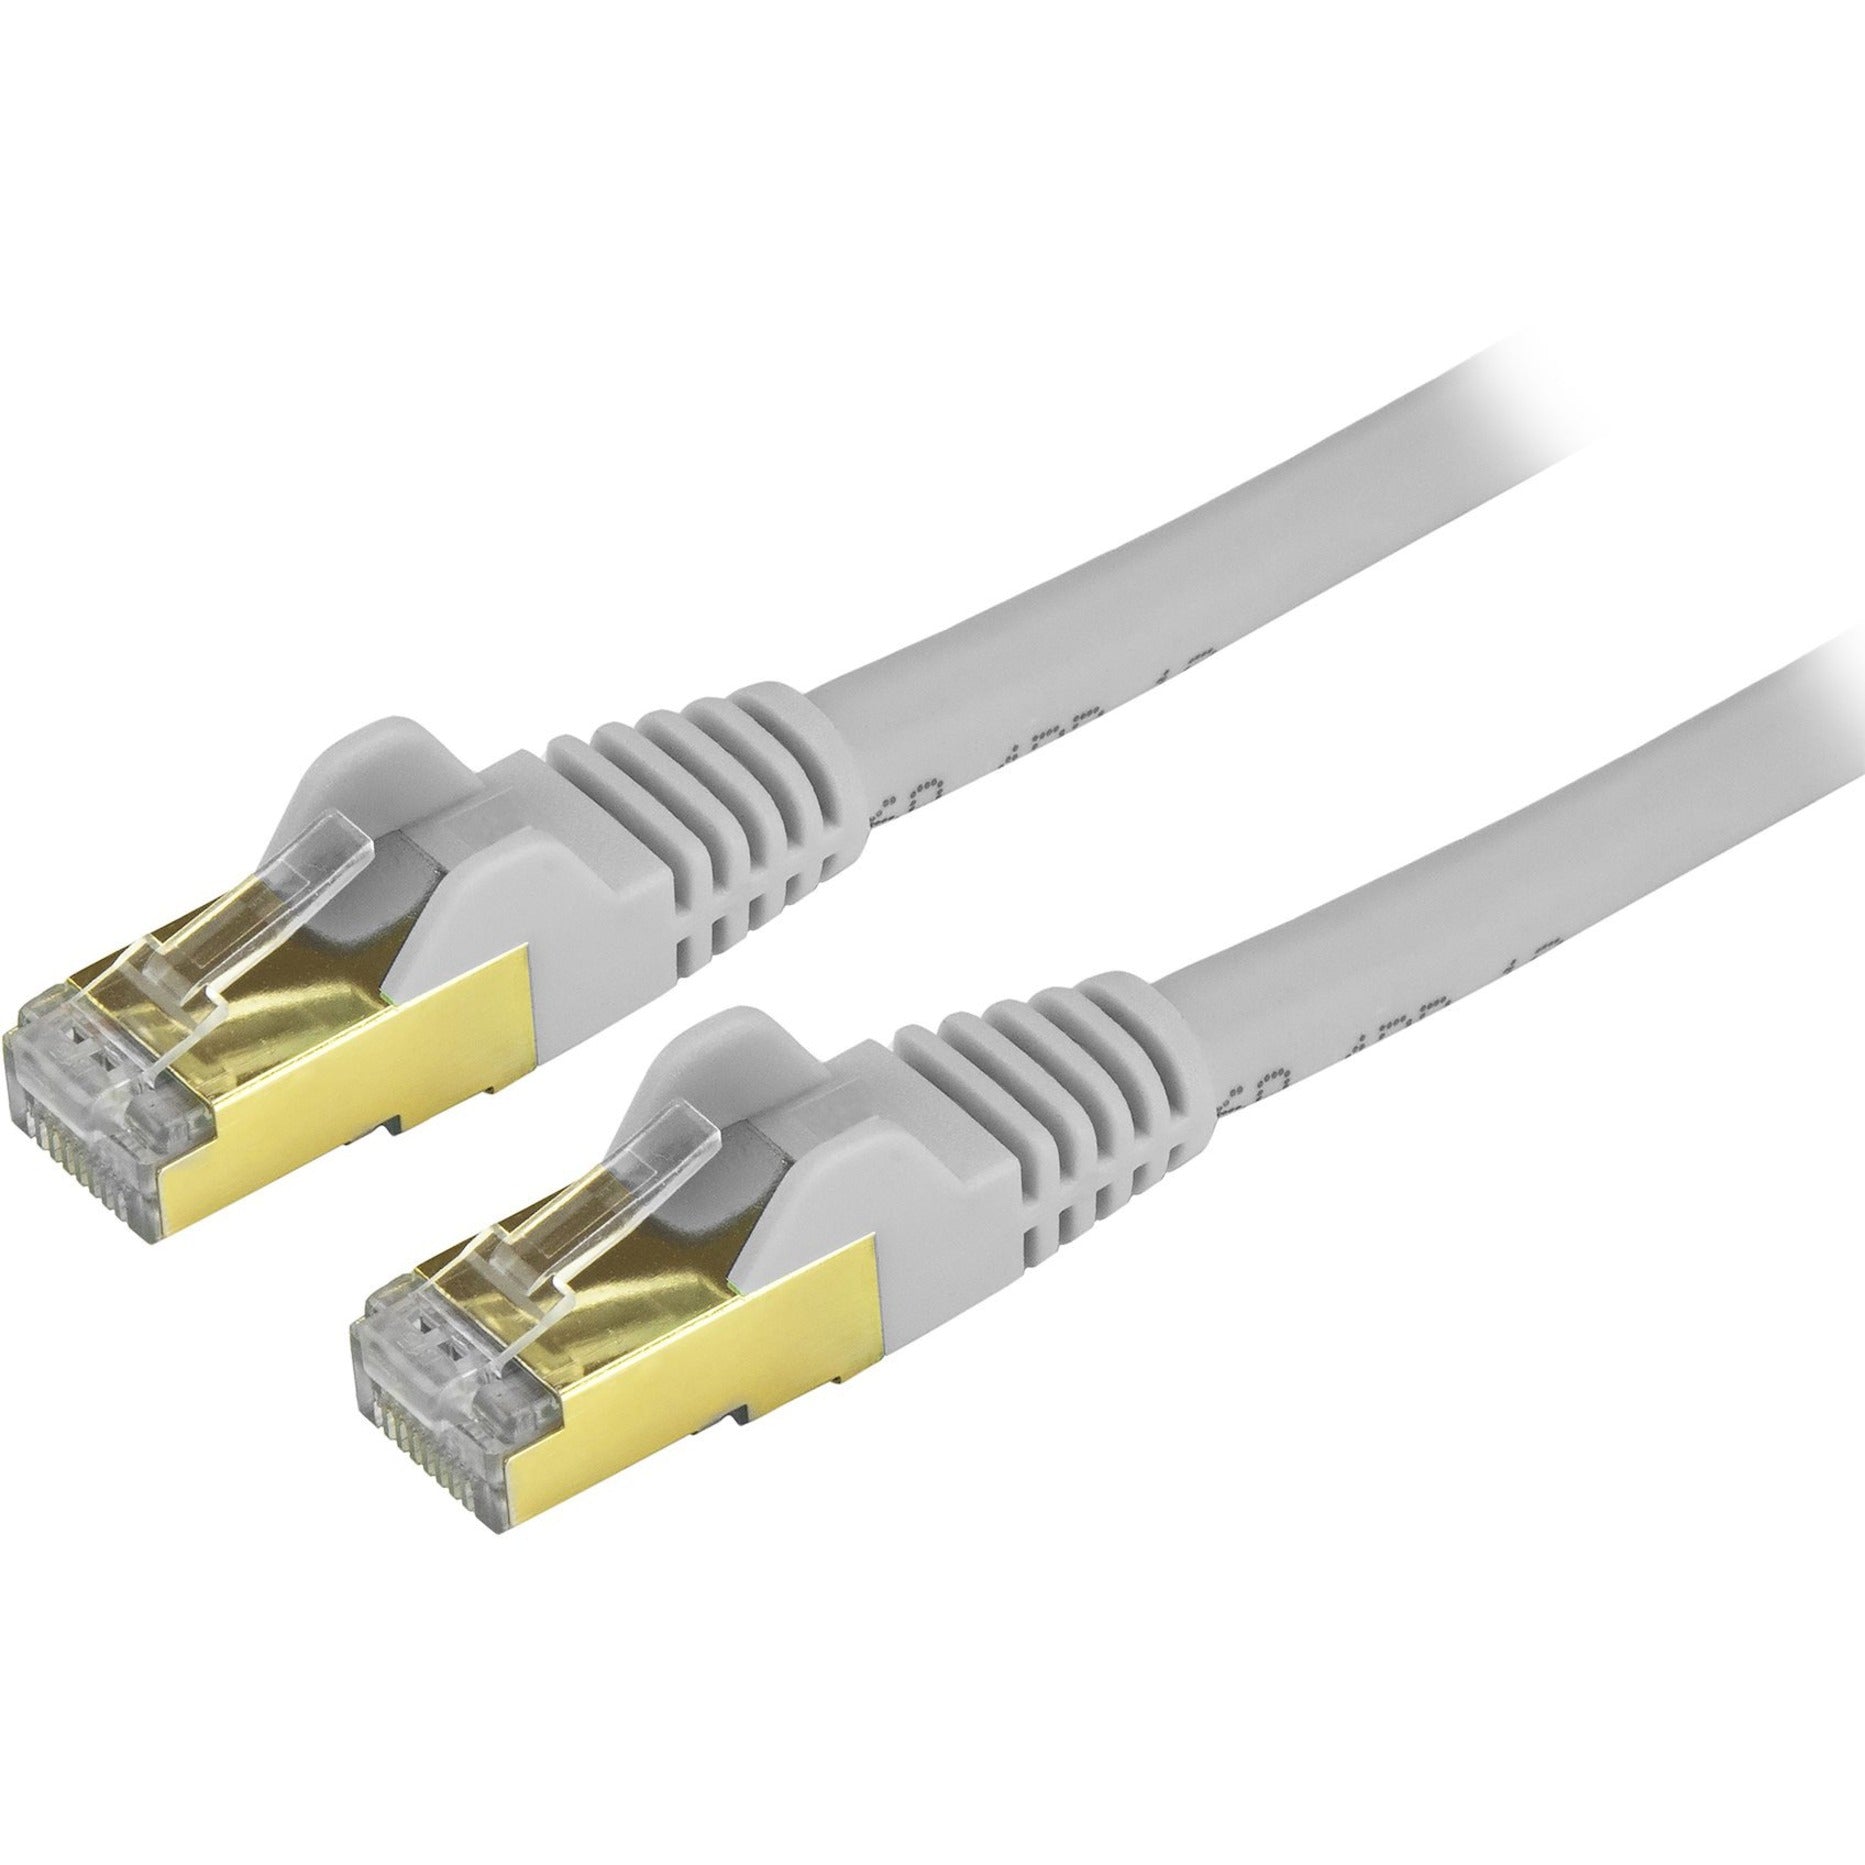 StarTech.com C6ASPAT35GR Cat6a Ethernet Patch Cable - Shielded (STP) - 35 ft., Gray, Long Ethernet Cord